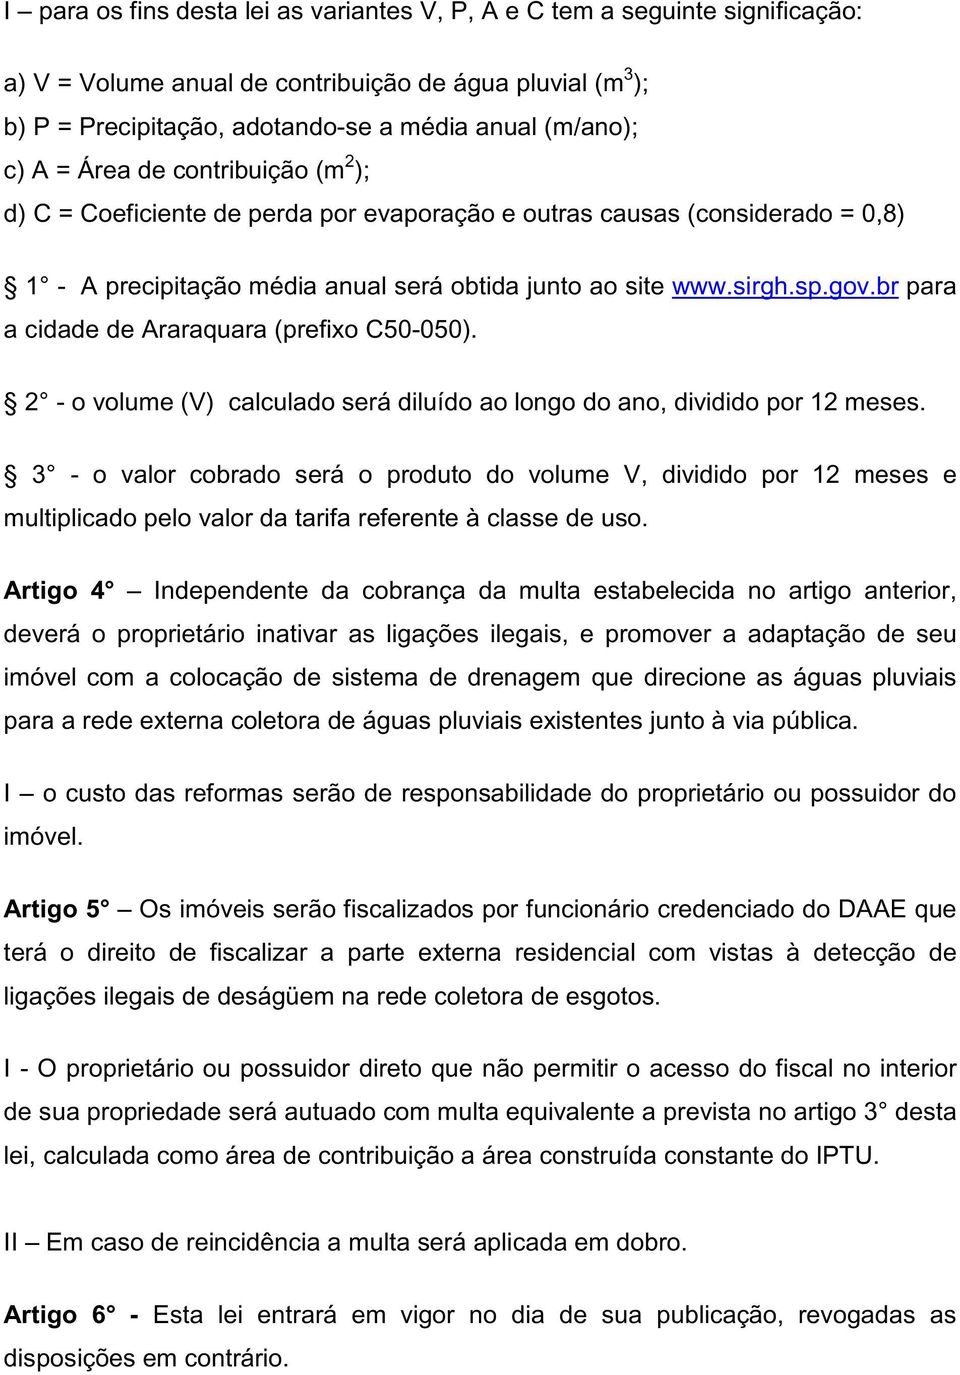 br para a cidade de Araraquara (prefixo C50-050). 2 - o volume (V) calculado será diluído ao longo do ano, dividido por 12 meses.